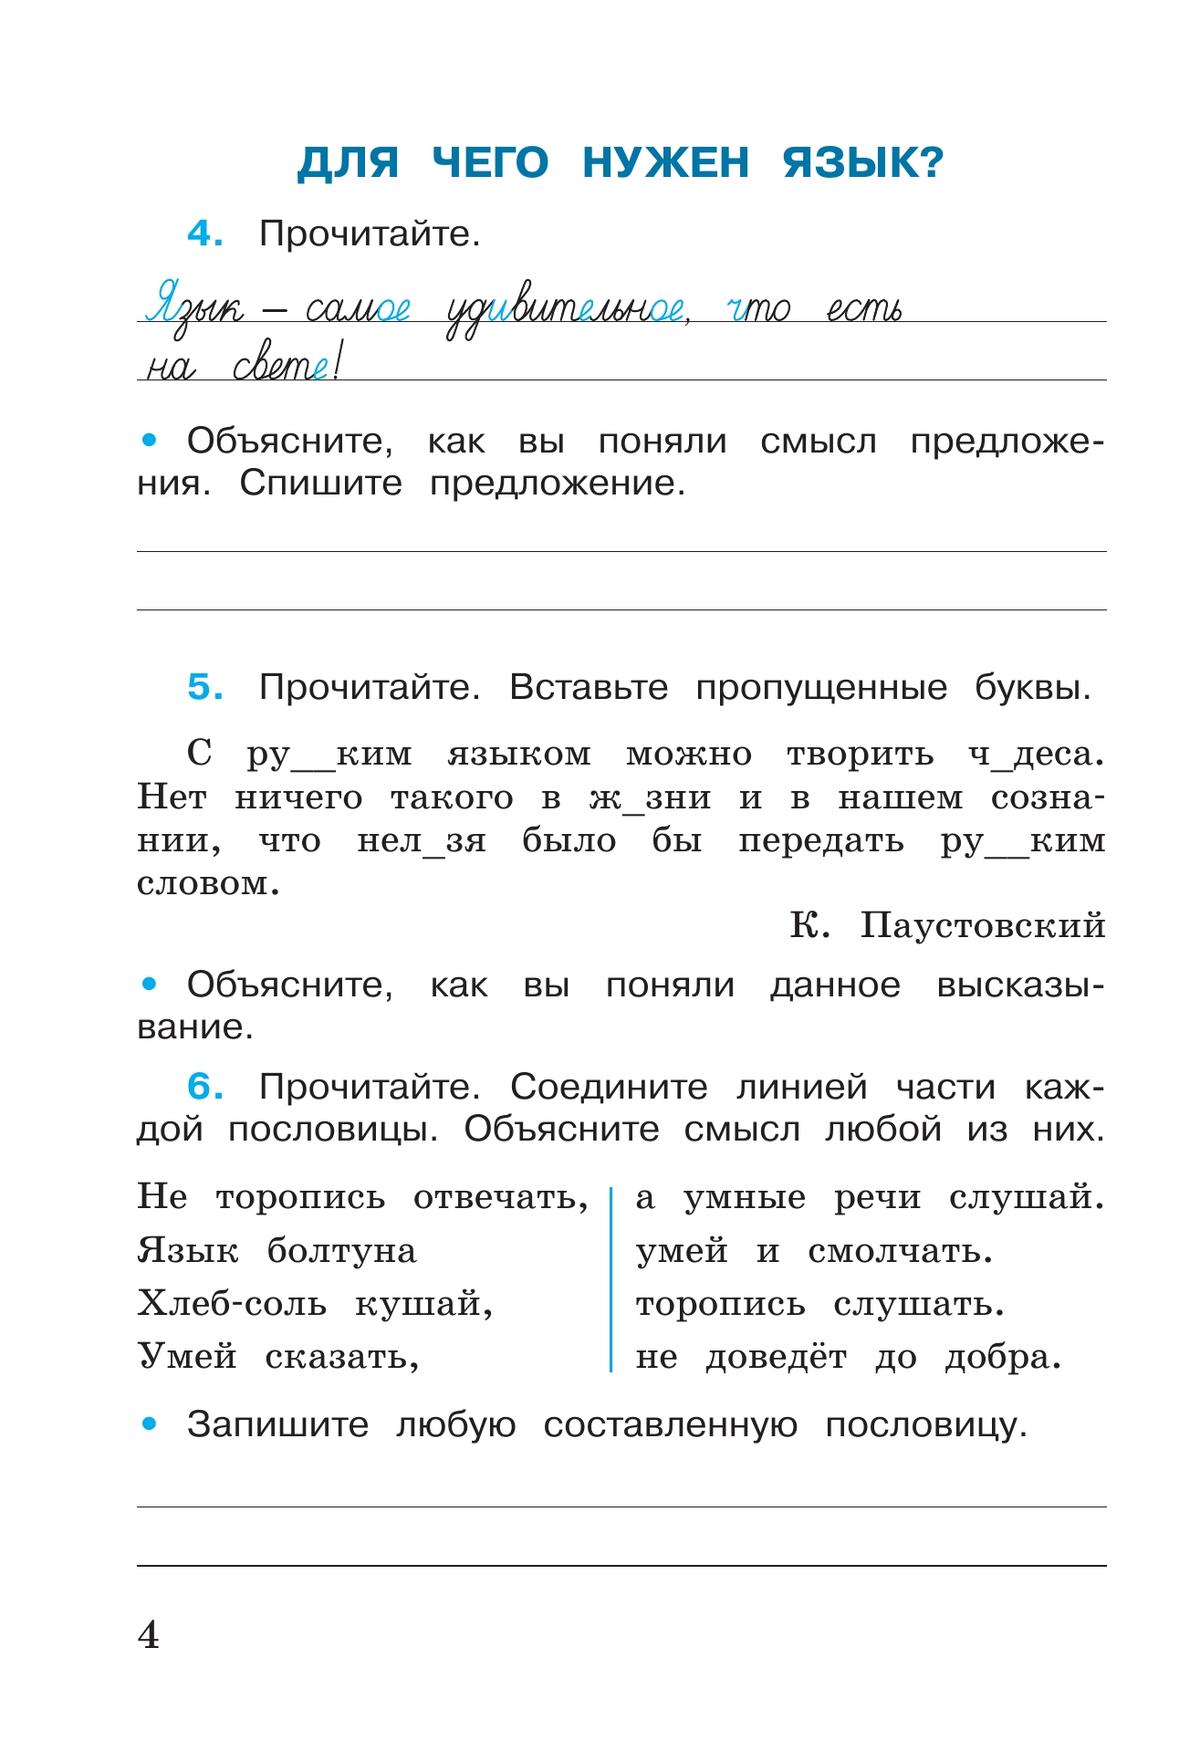 Русский язык. Рабочая тетрадь. 3 класс. В 2 частях. Часть 1 6